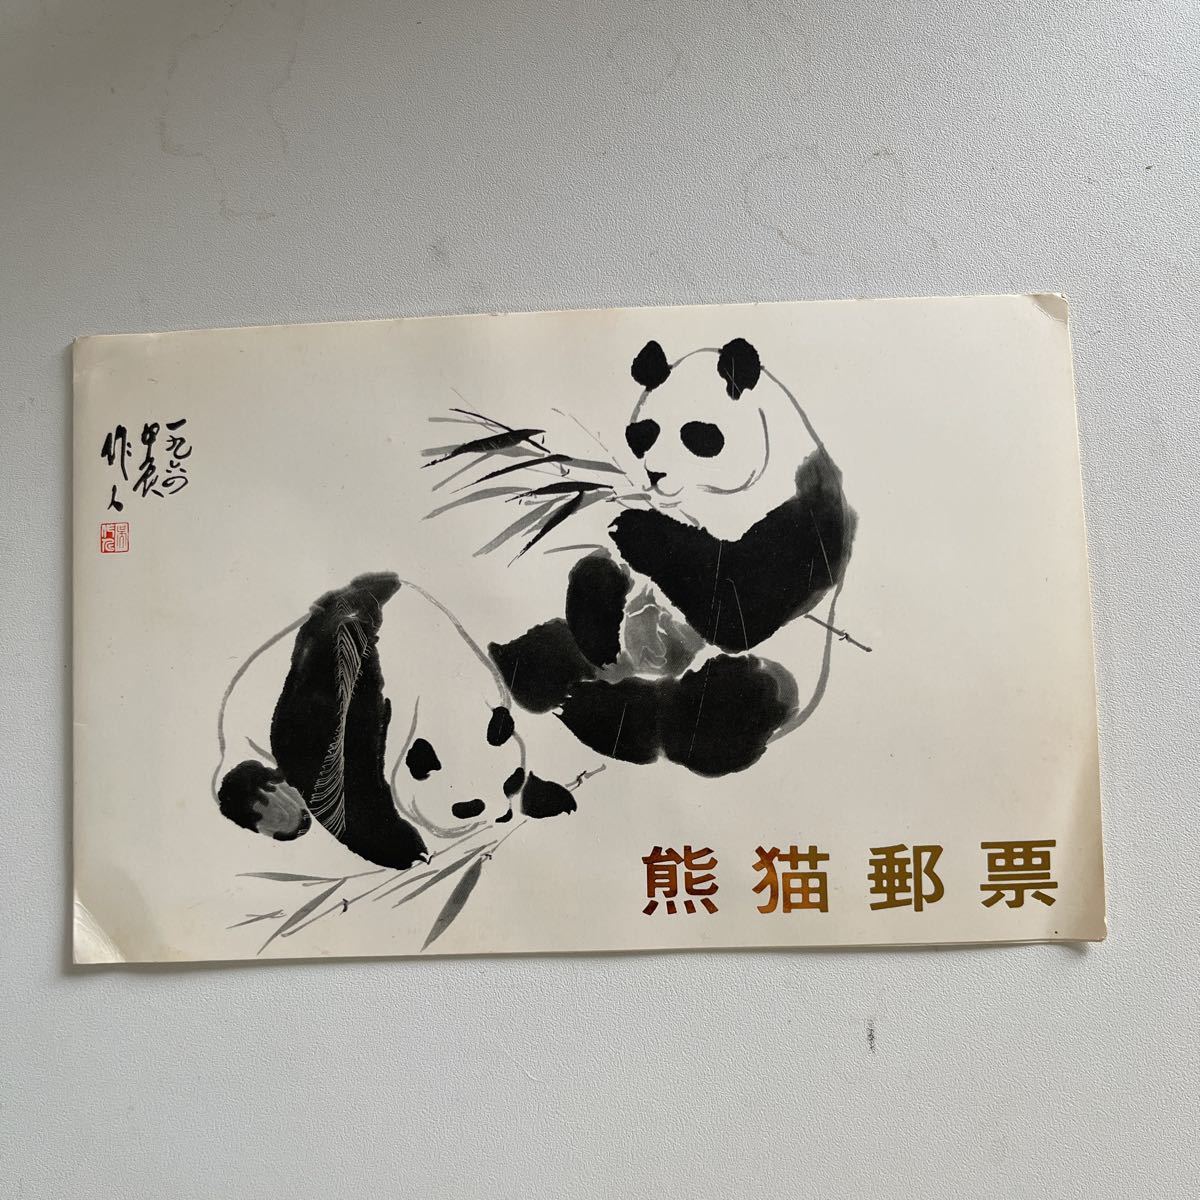 【期間限定お試し価格】 熊猫郵票　オオパンダ切手 1973.1.15発行 アジア